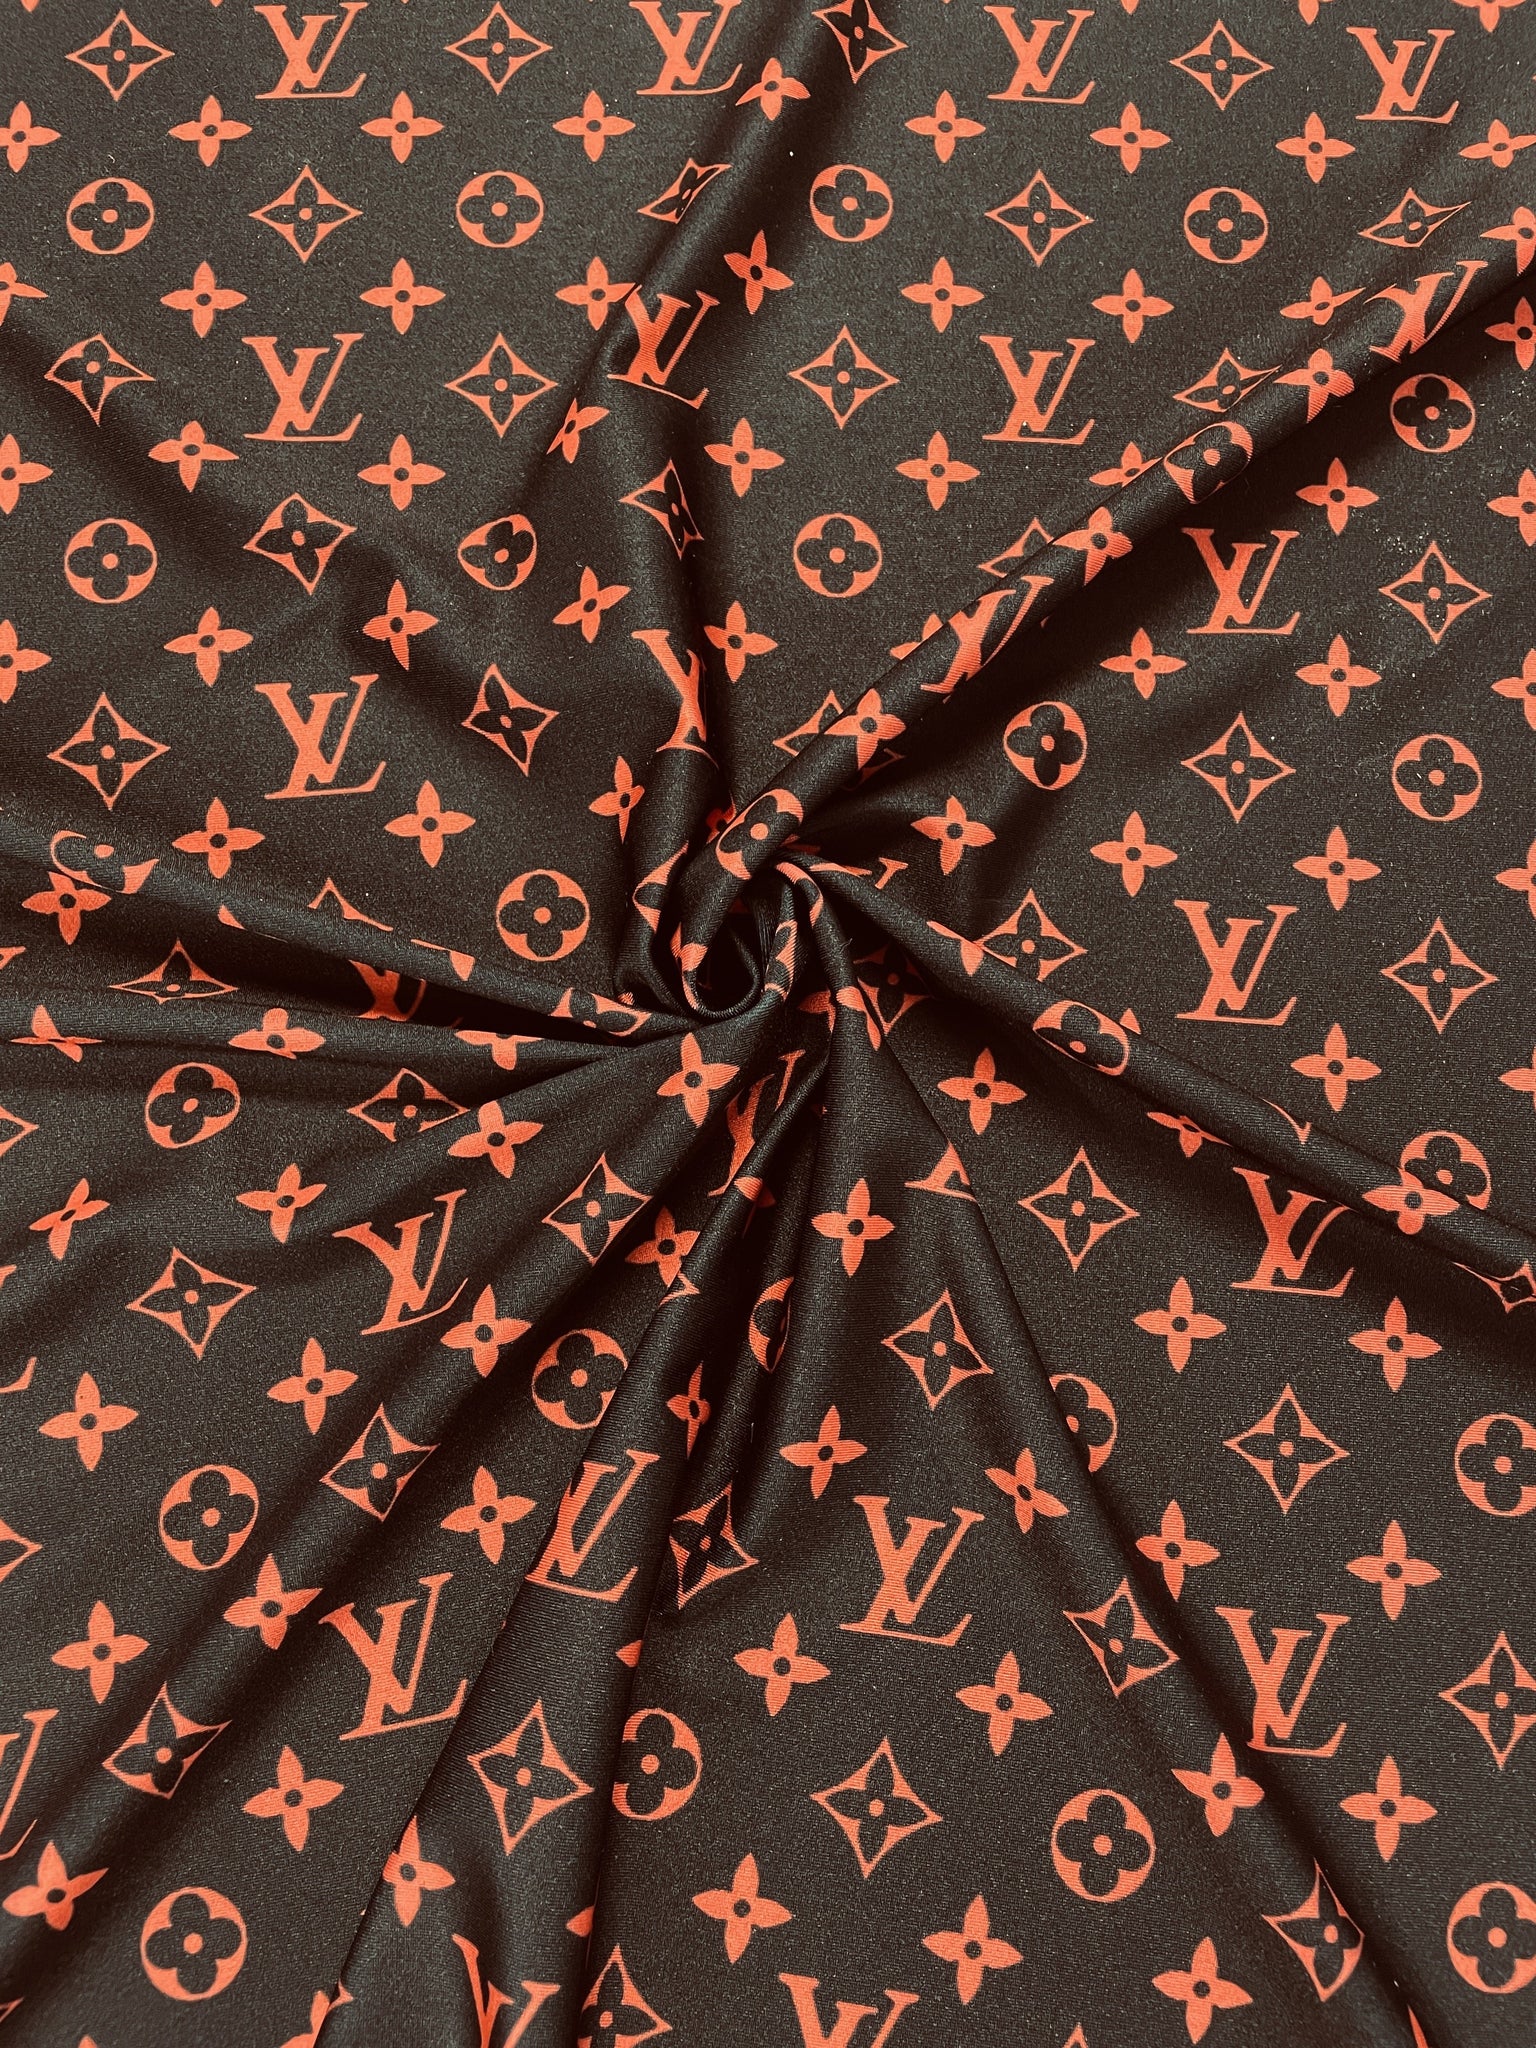 Louis Vuitton Logo – iprintz